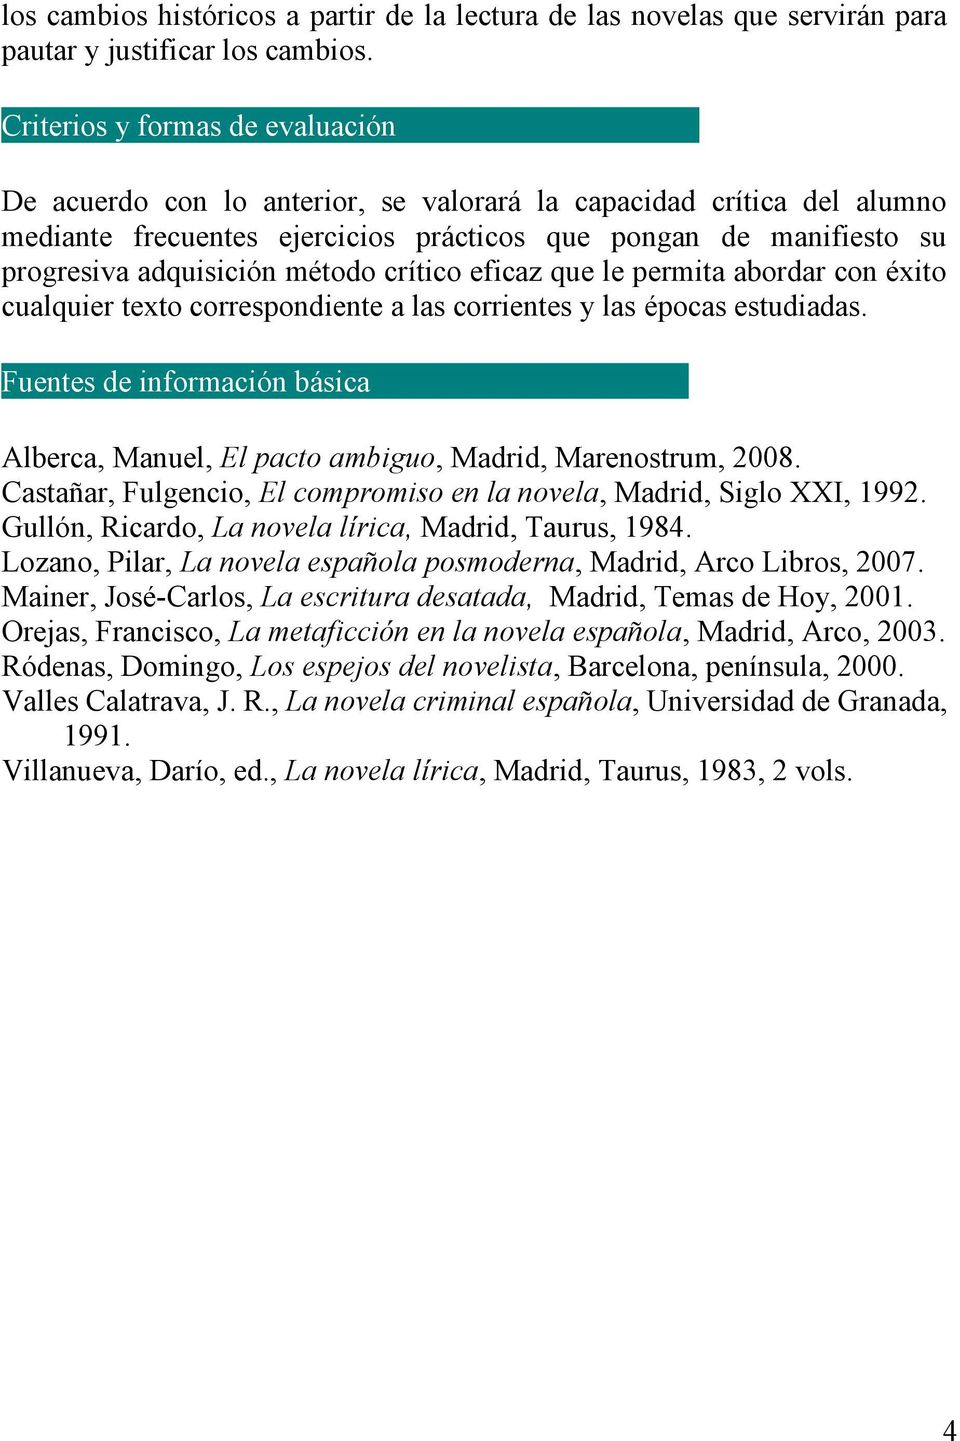 permita abordar con éxito cualquier texto correspondiente a las corrientes y las épocas estudiadas. Fuentes de información básica. Alberca, Manuel, El pacto ambiguo, Madrid, Marenostrum, 2008.